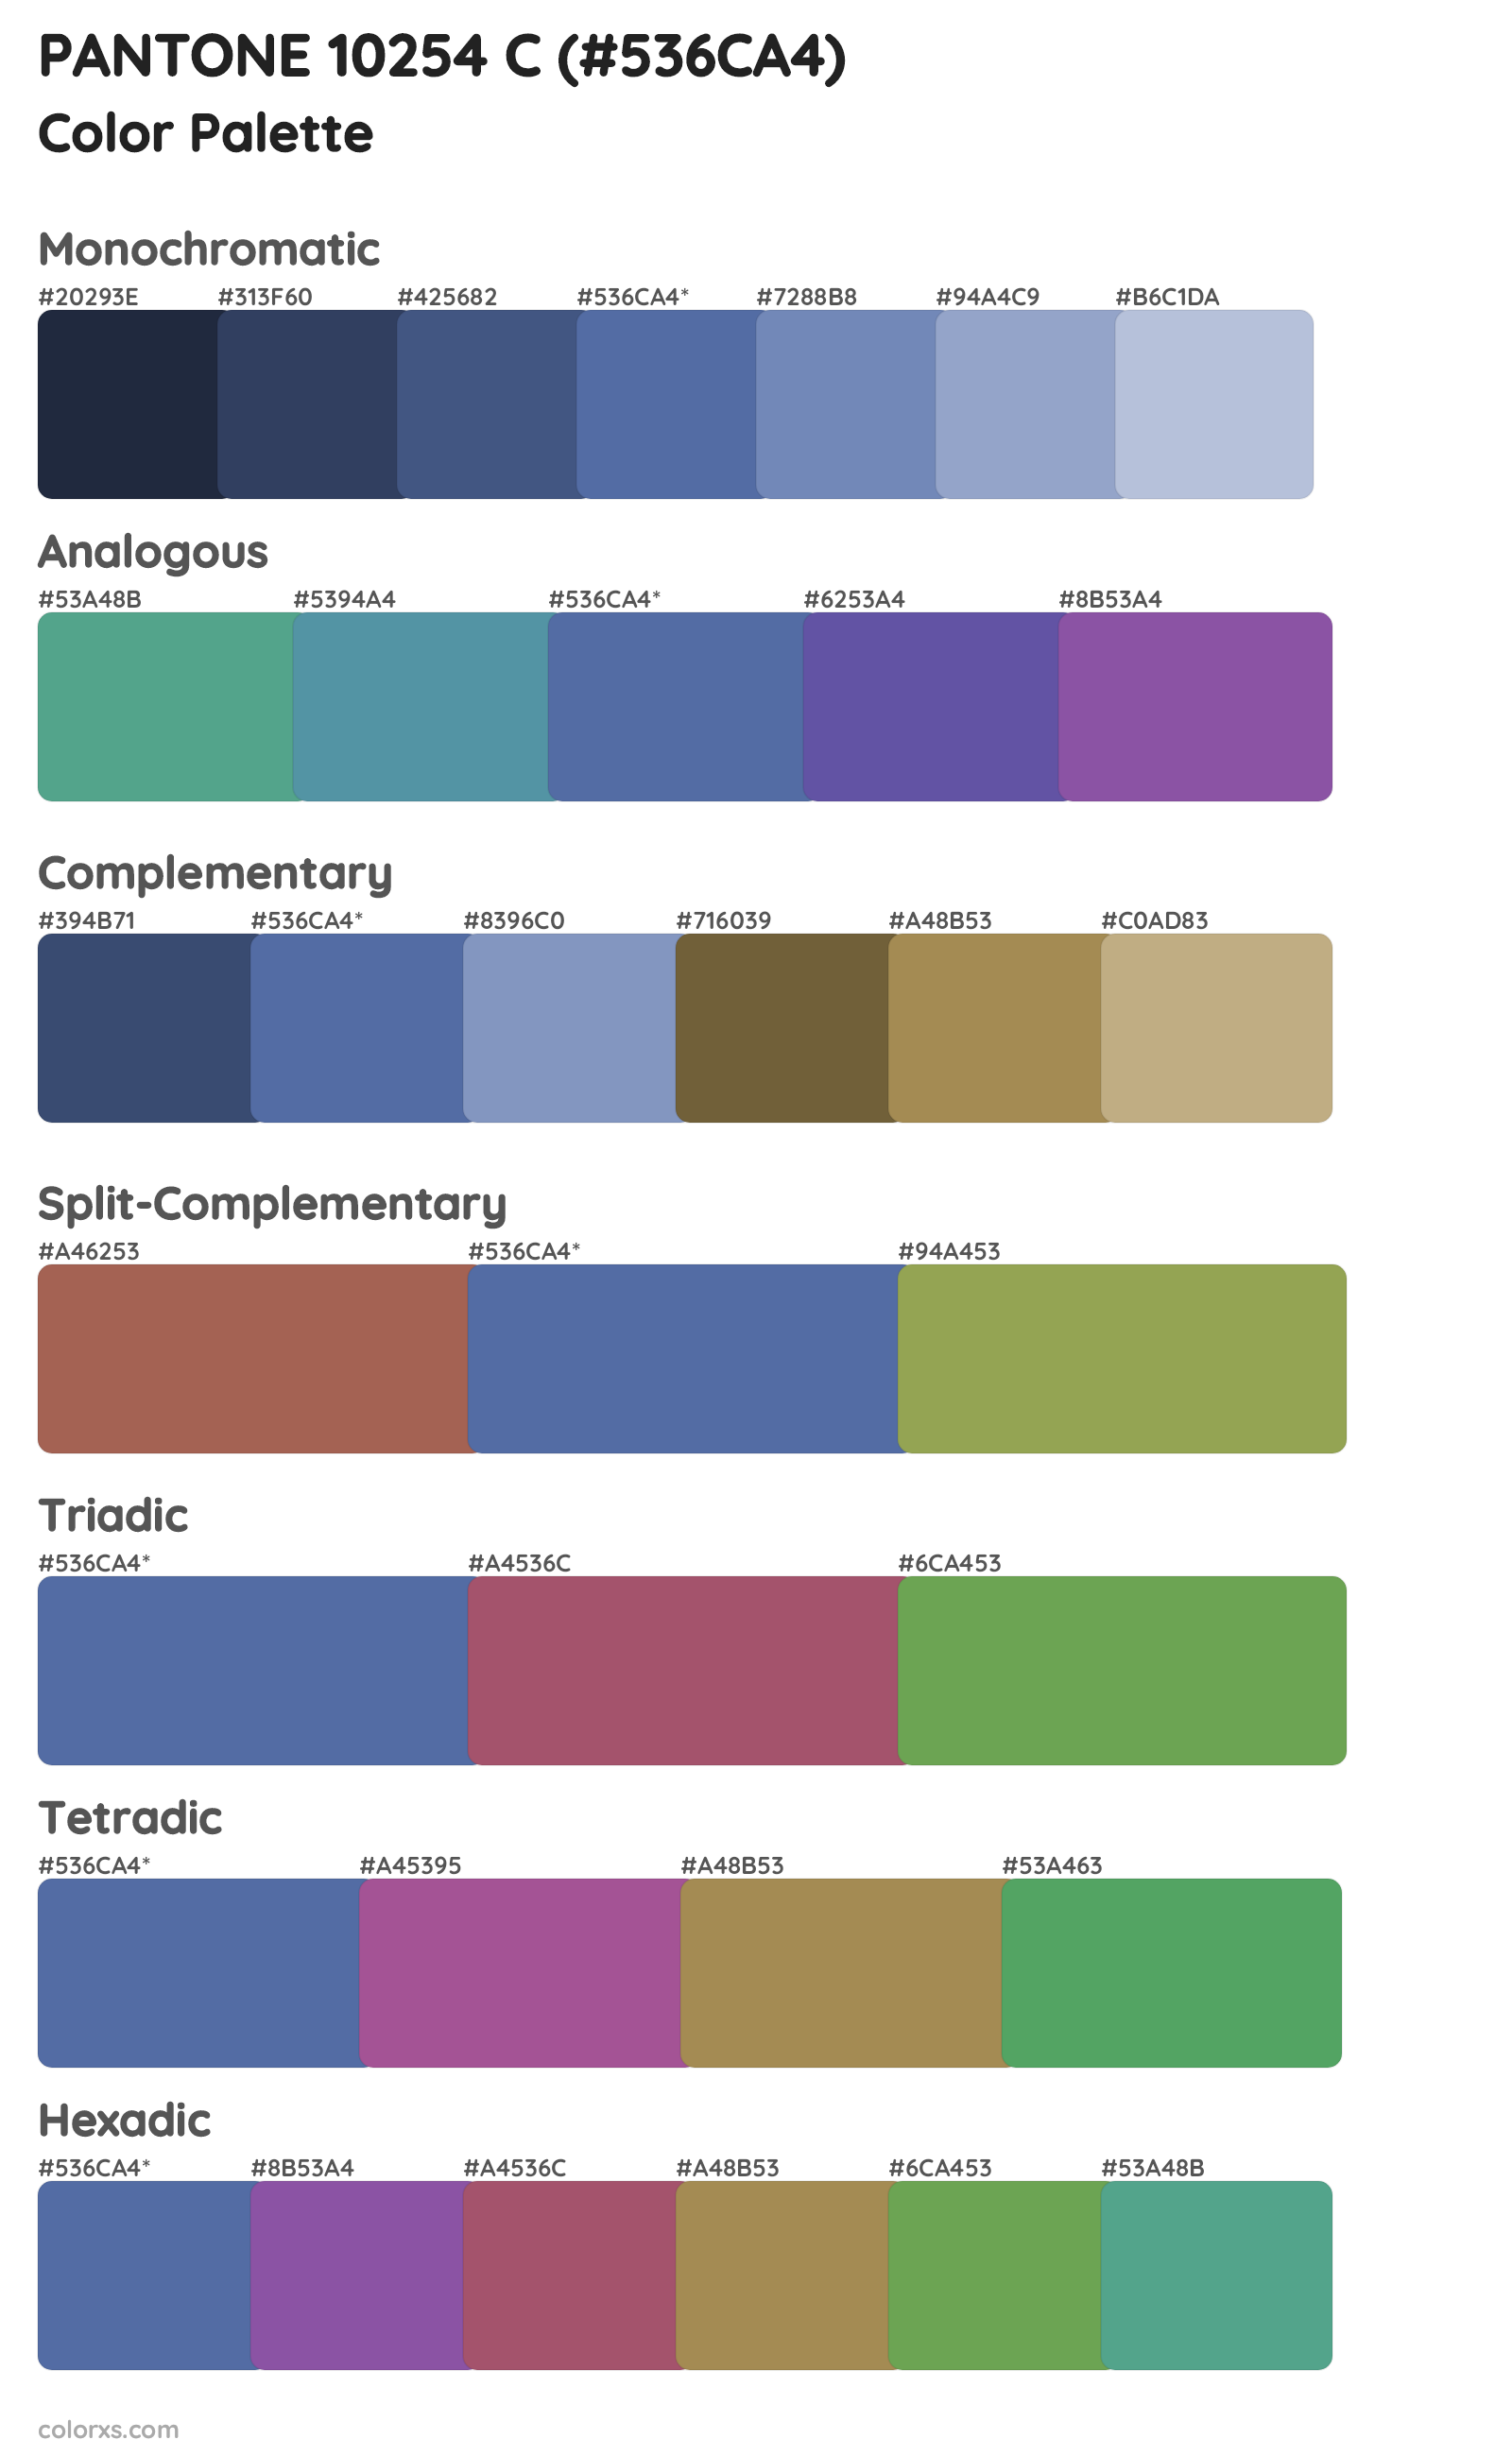 PANTONE 10254 C Color Scheme Palettes